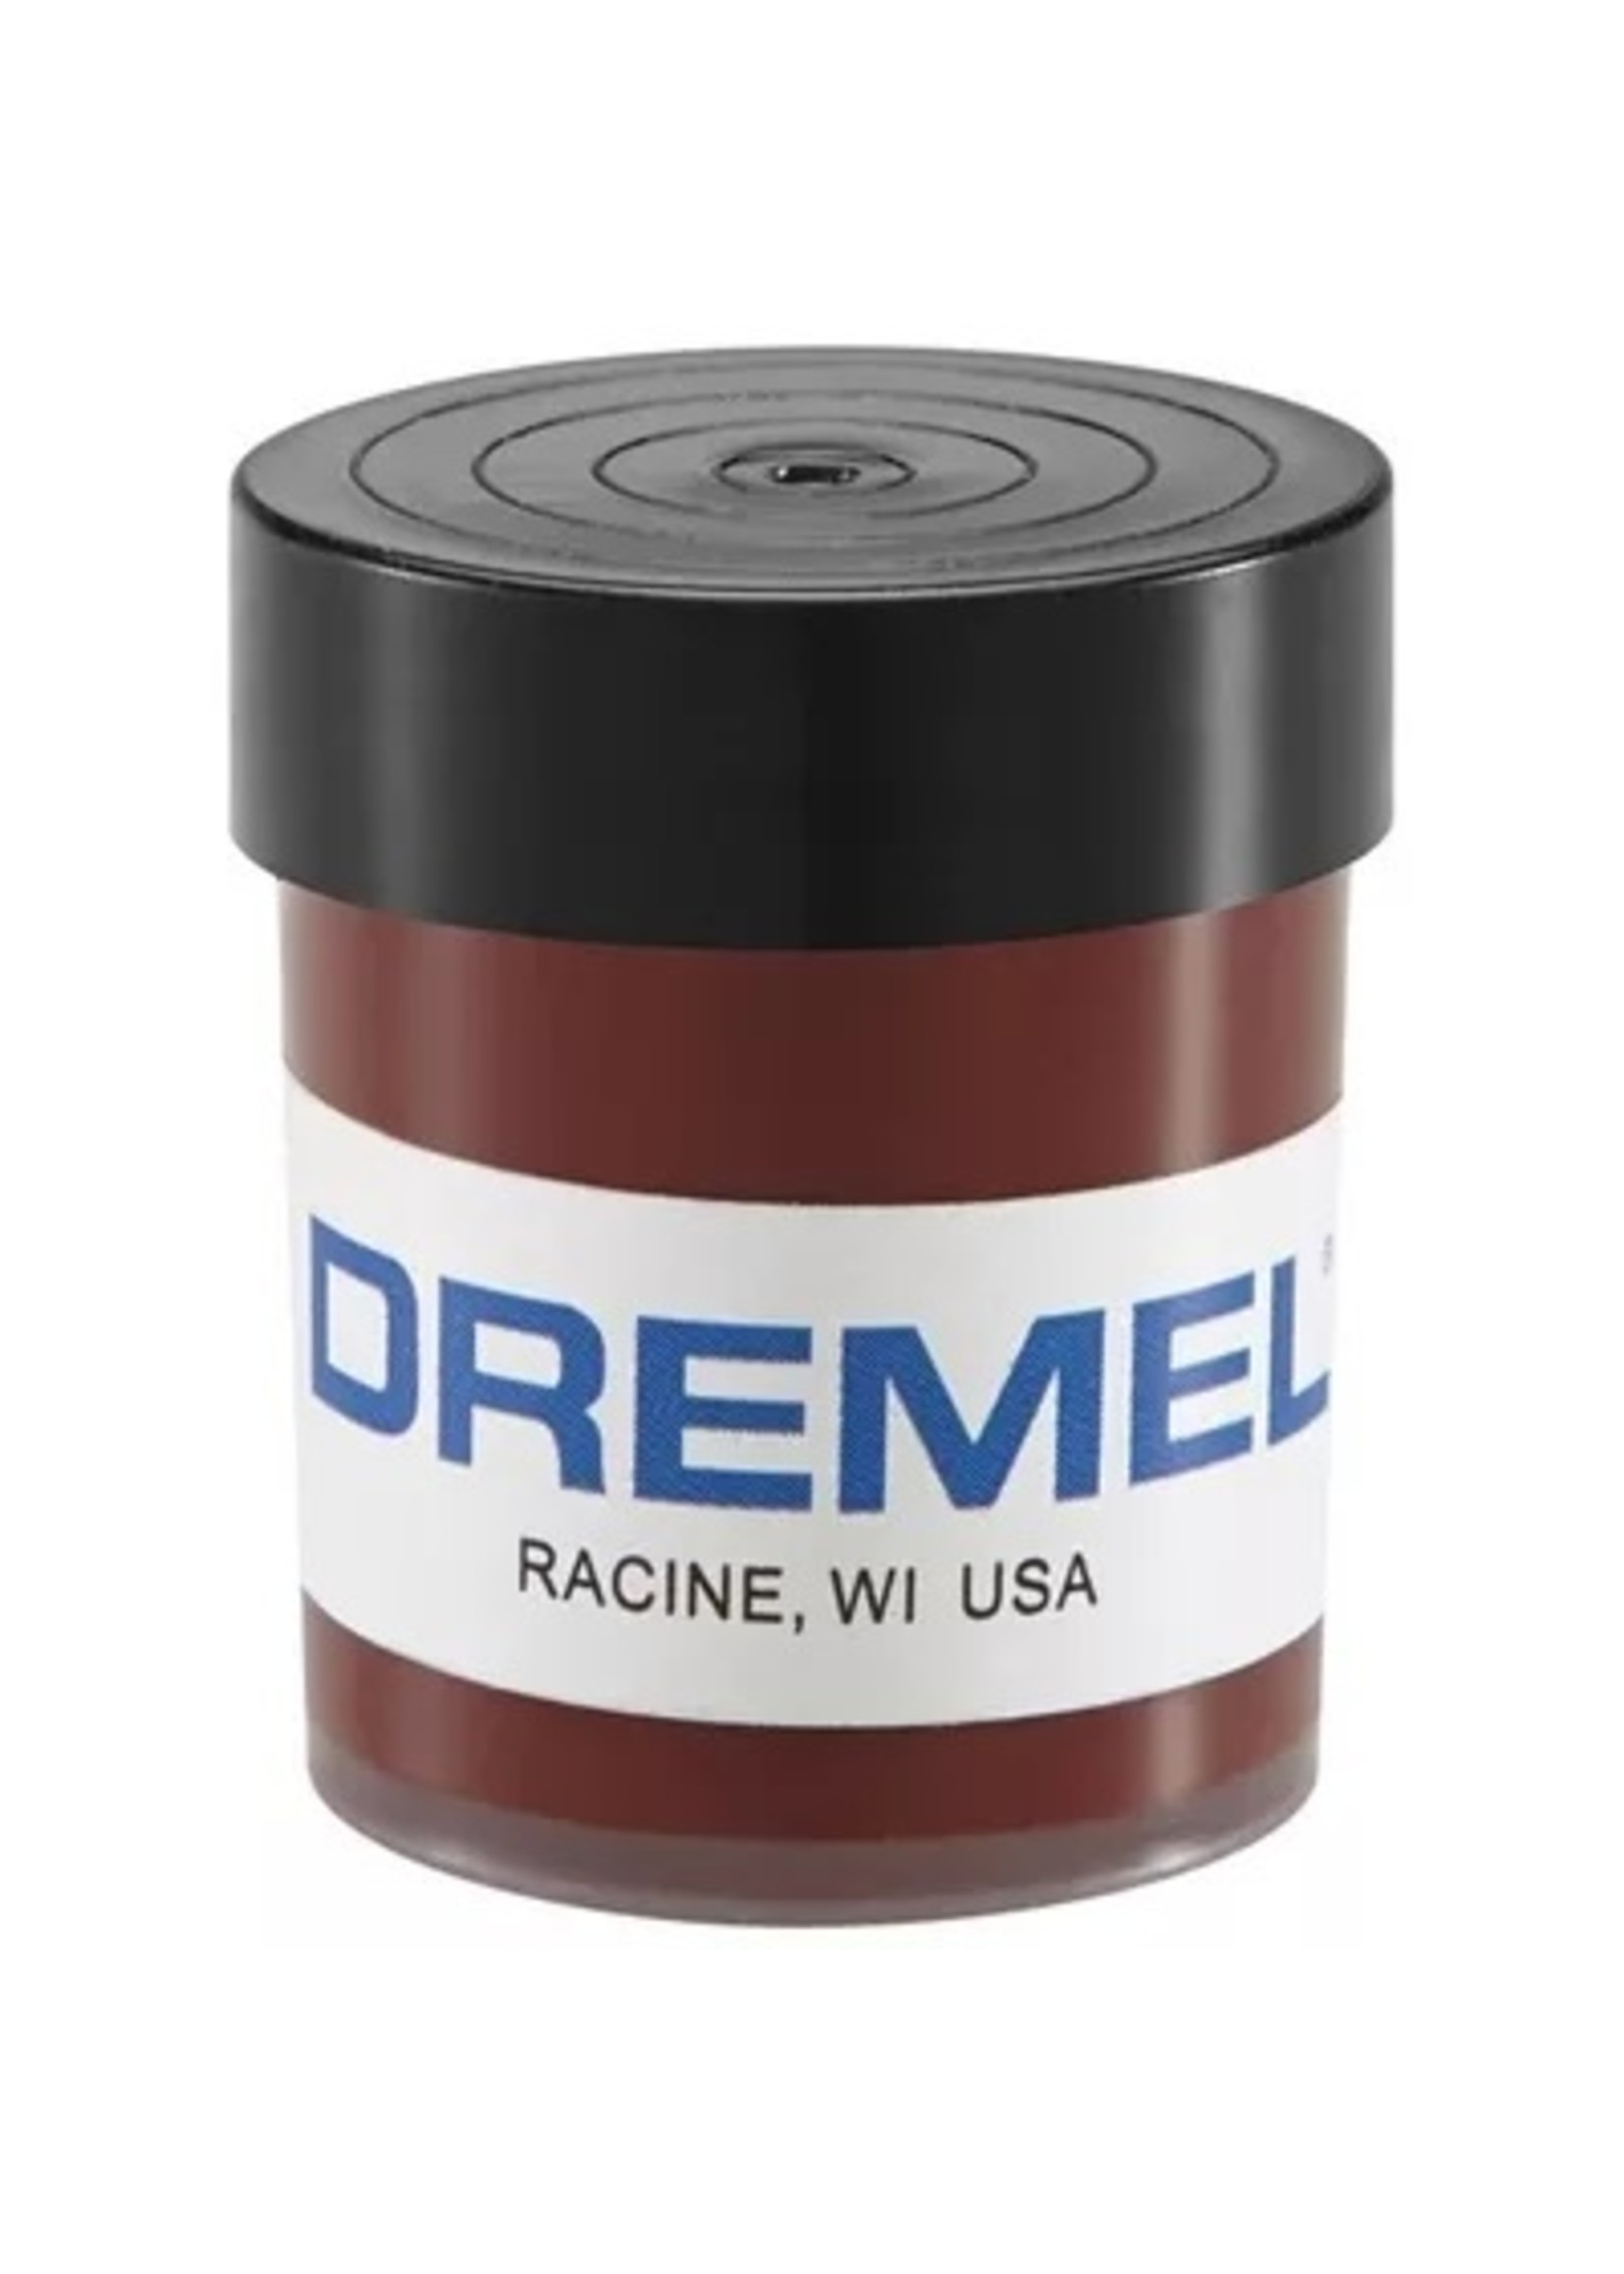 Dremel 421 - Polishing Compound